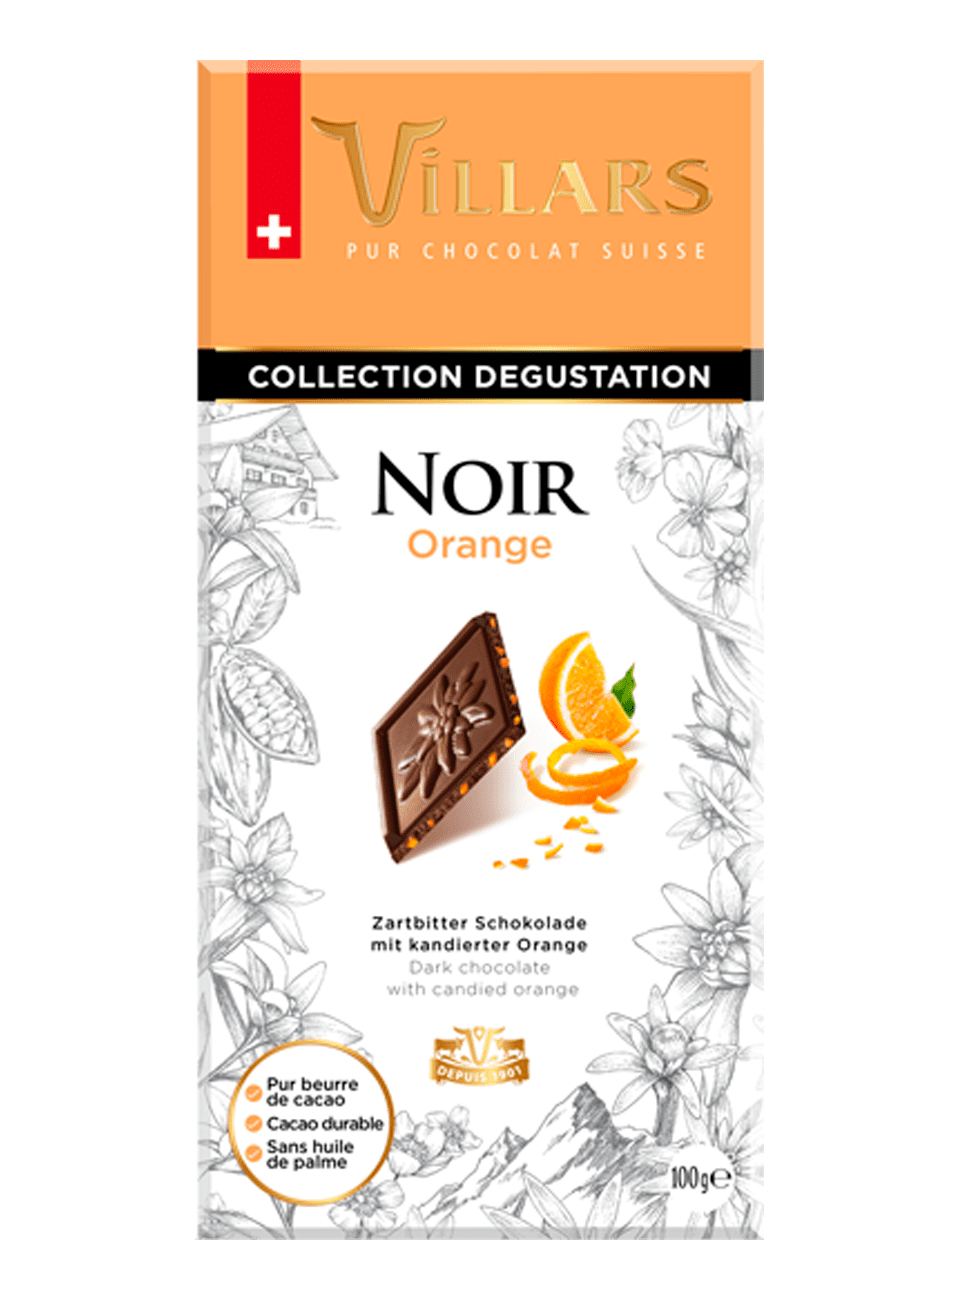 Тёмный шоколад с цукатами из апельсиновых корочек Виляр Колексьон Дегустатьон Нуар Орандж